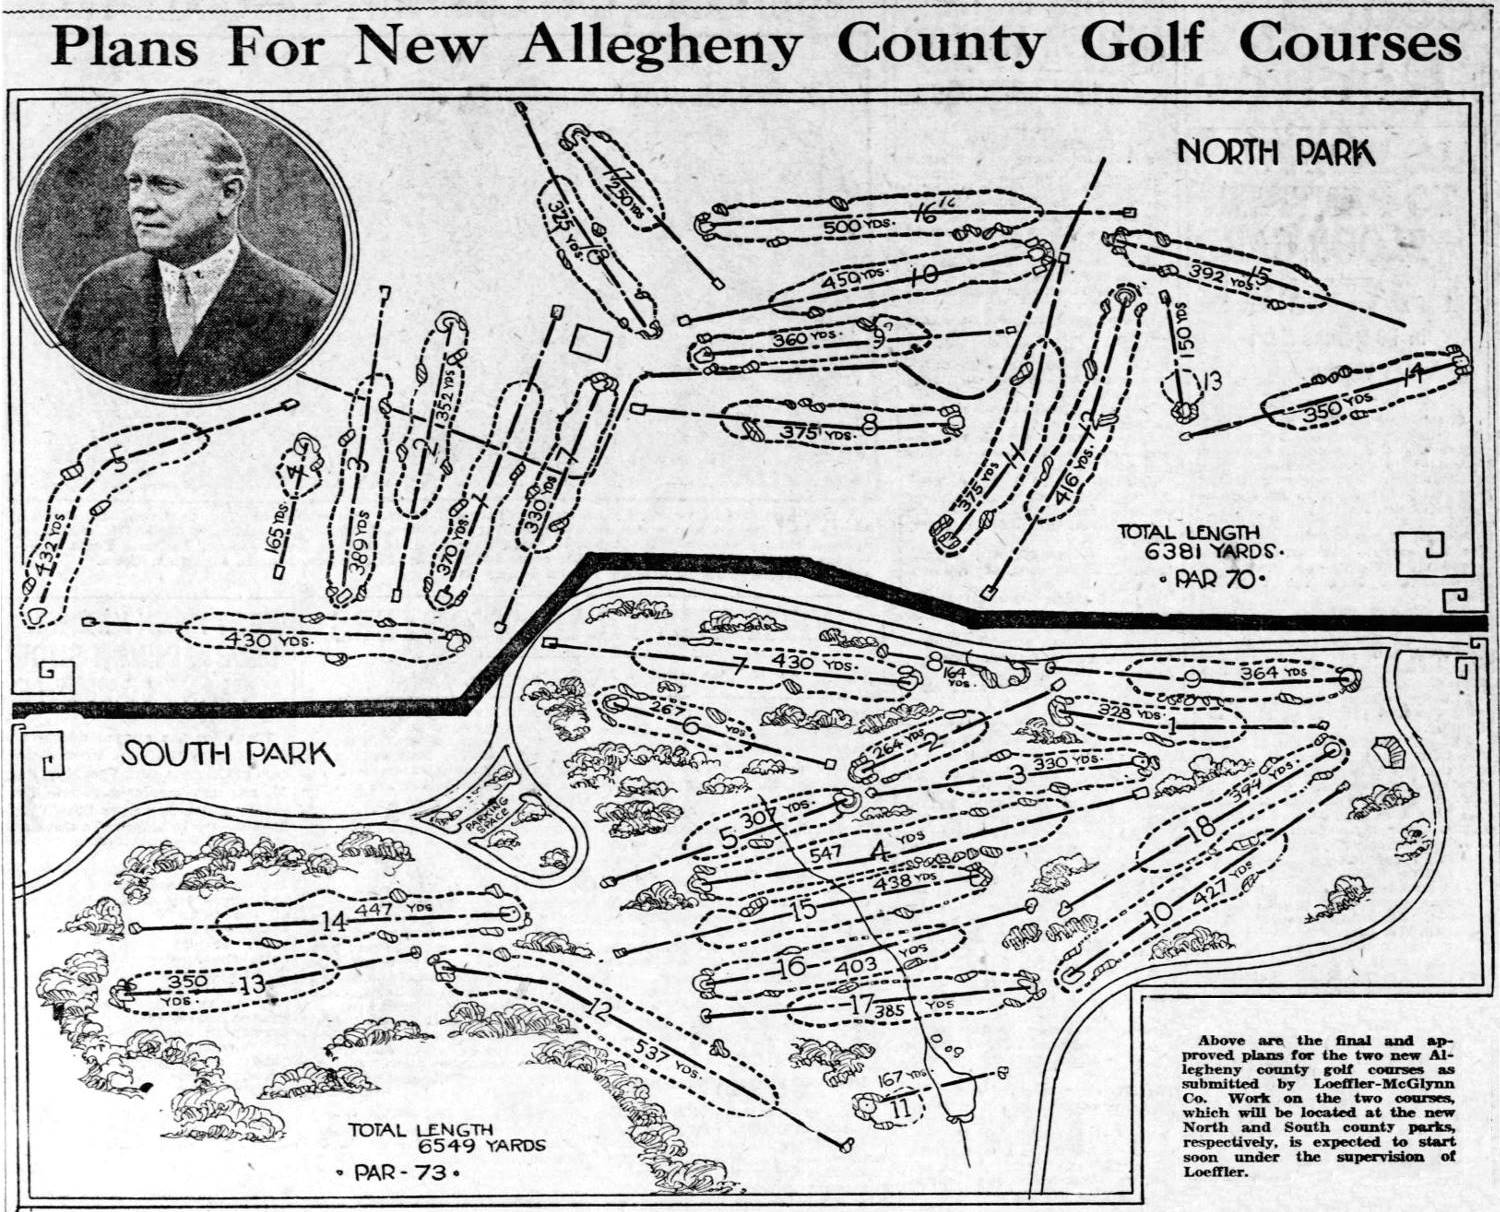 Pittsburgh Press - June 10, 1928.